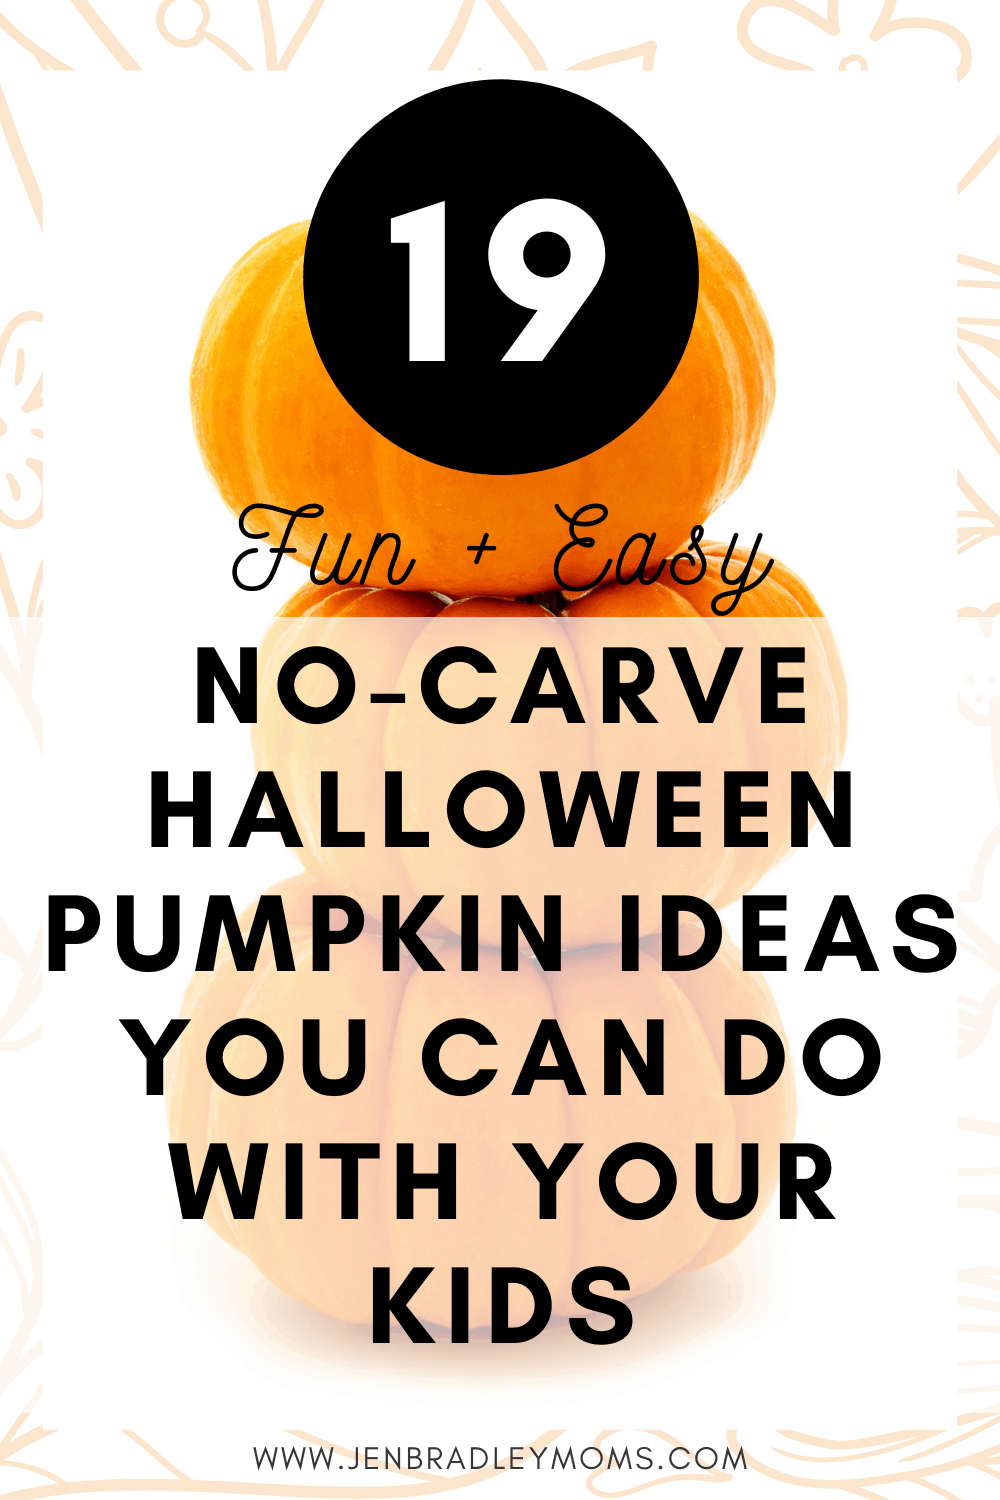 19 Kid-Friendly Pumpkin Carving Alternatives